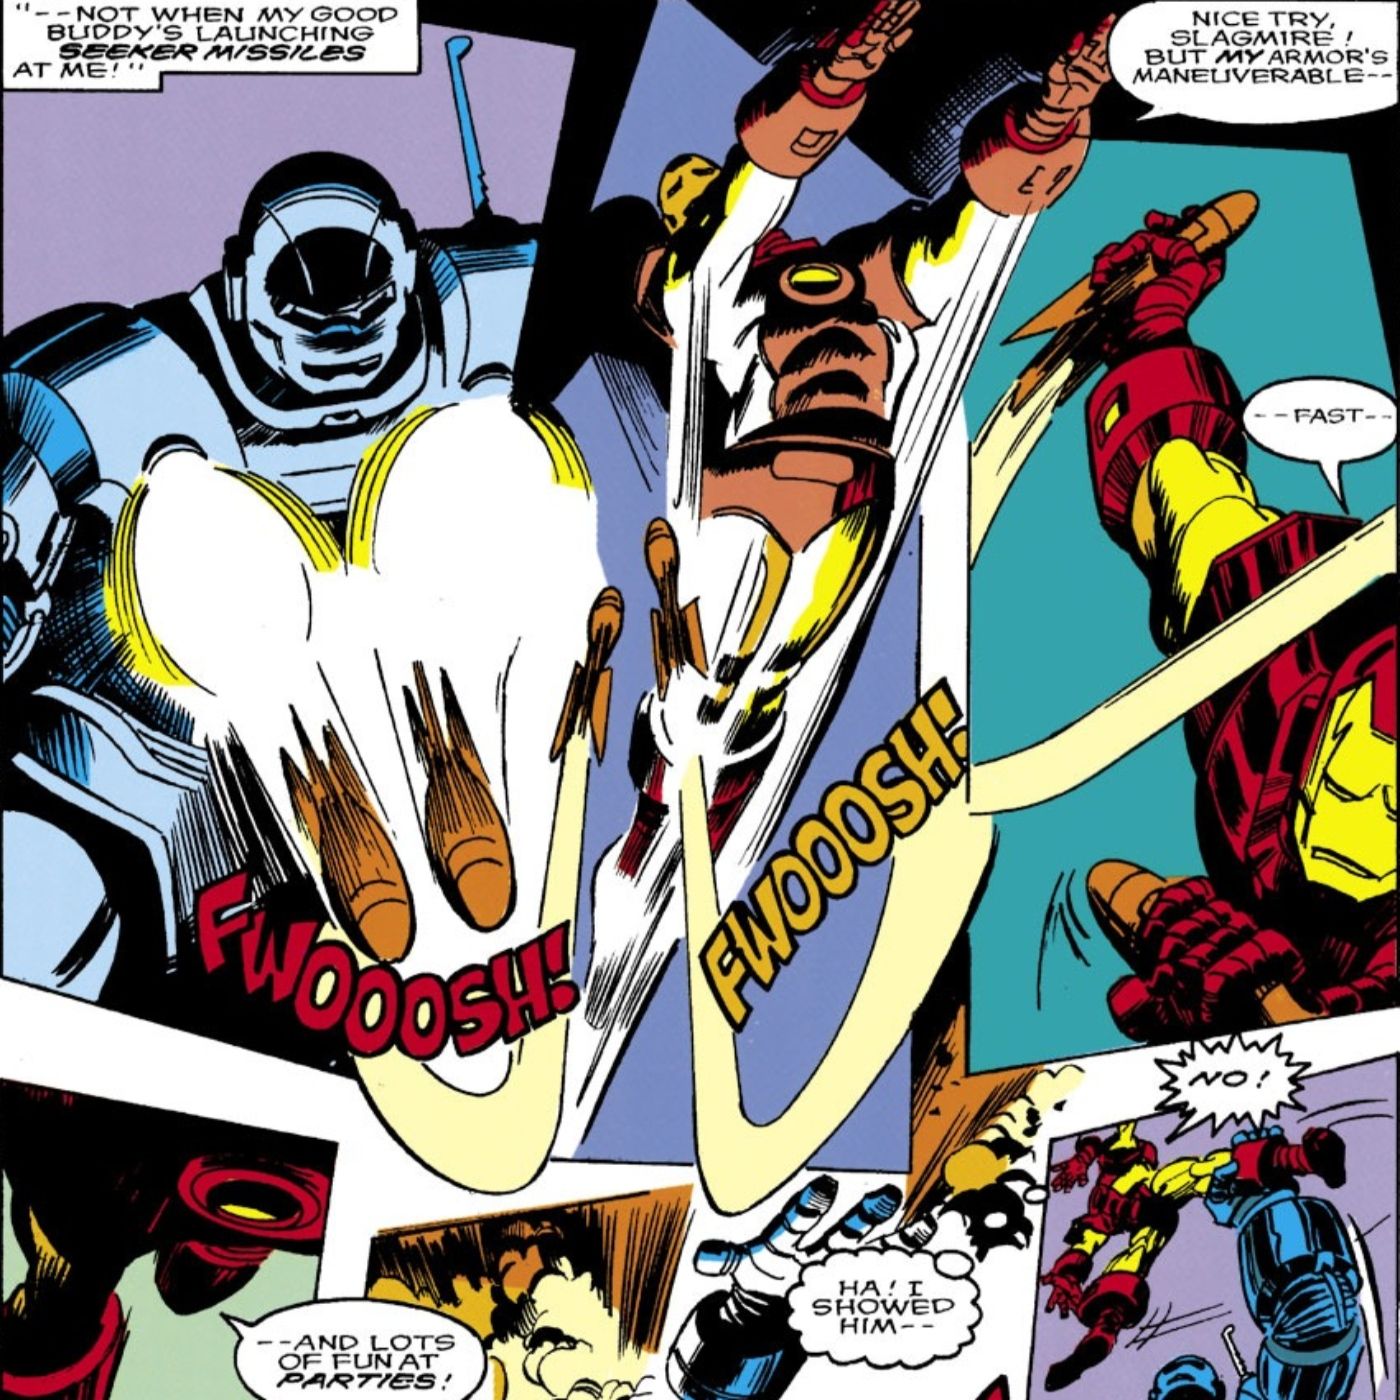 Iron Man melawan penjahat yang mengenakan baju besi 'Iron Man' mereka sendiri.